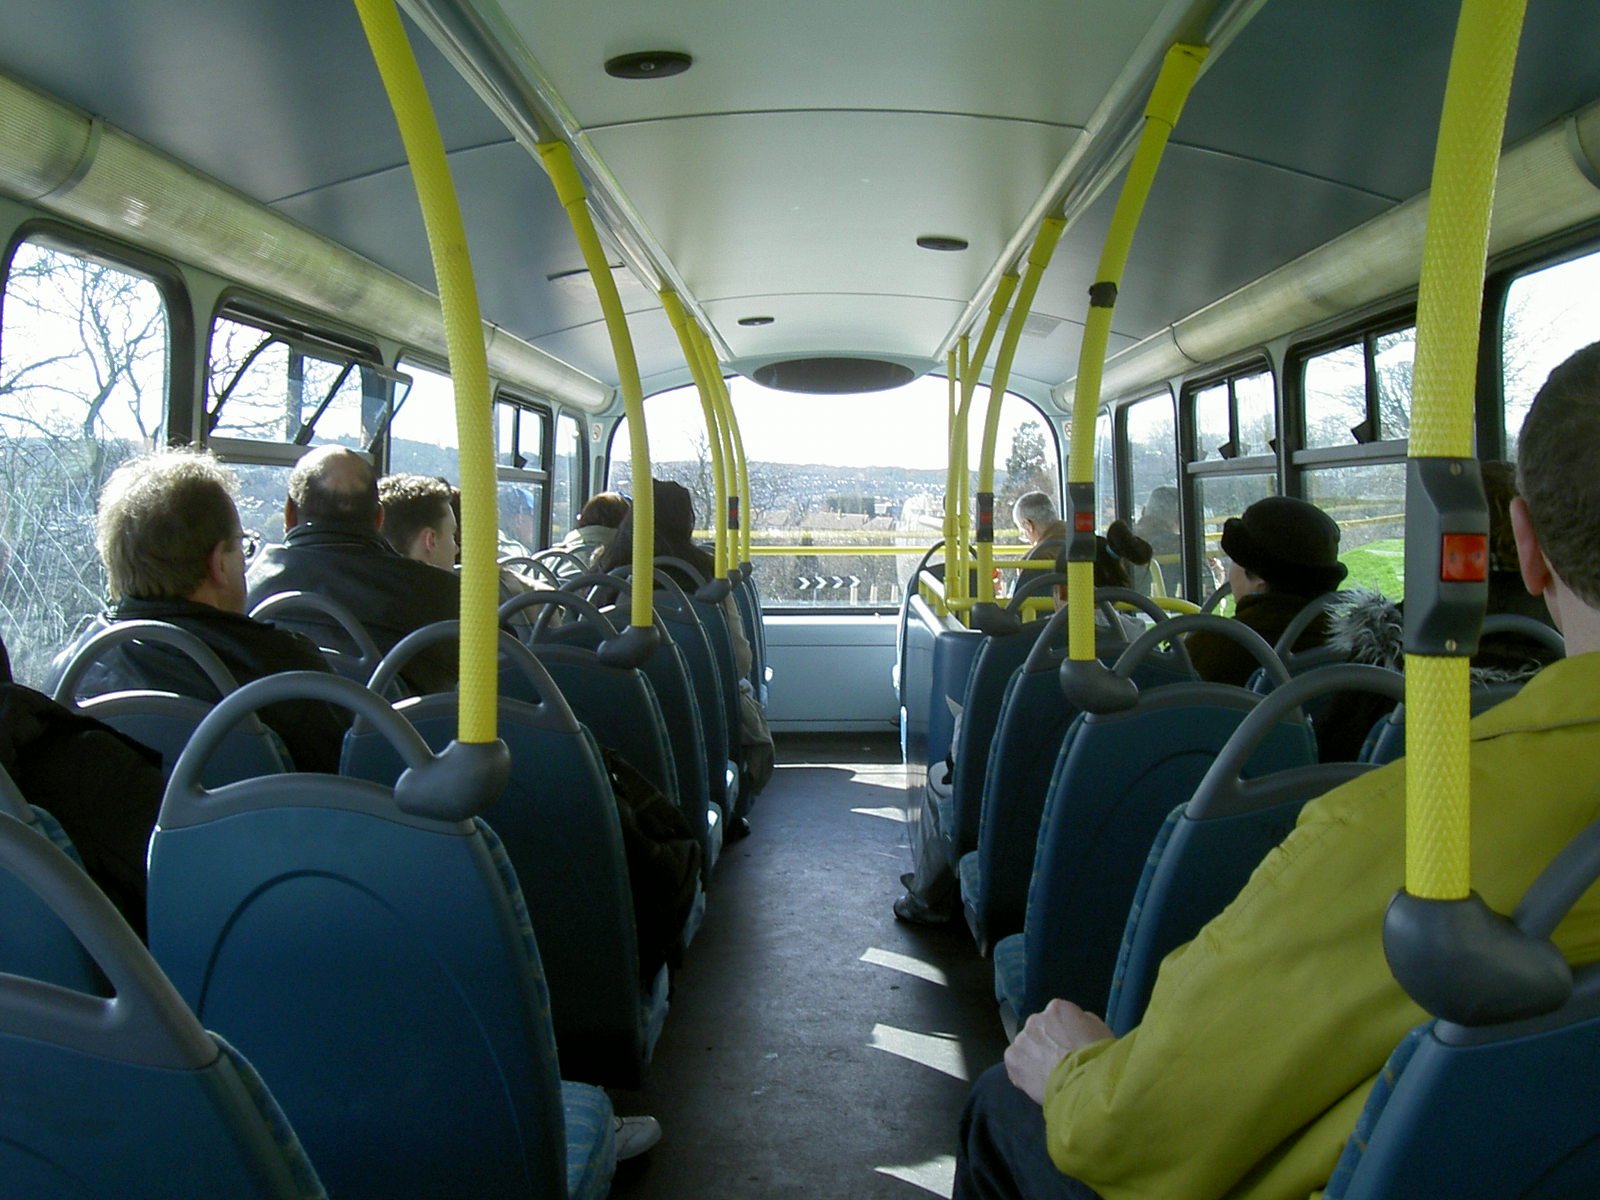 Салон общественного транспорта. Автобус внутри. Салон автобуса. Пассажирский автобус внутри. Маршрутка внутри.